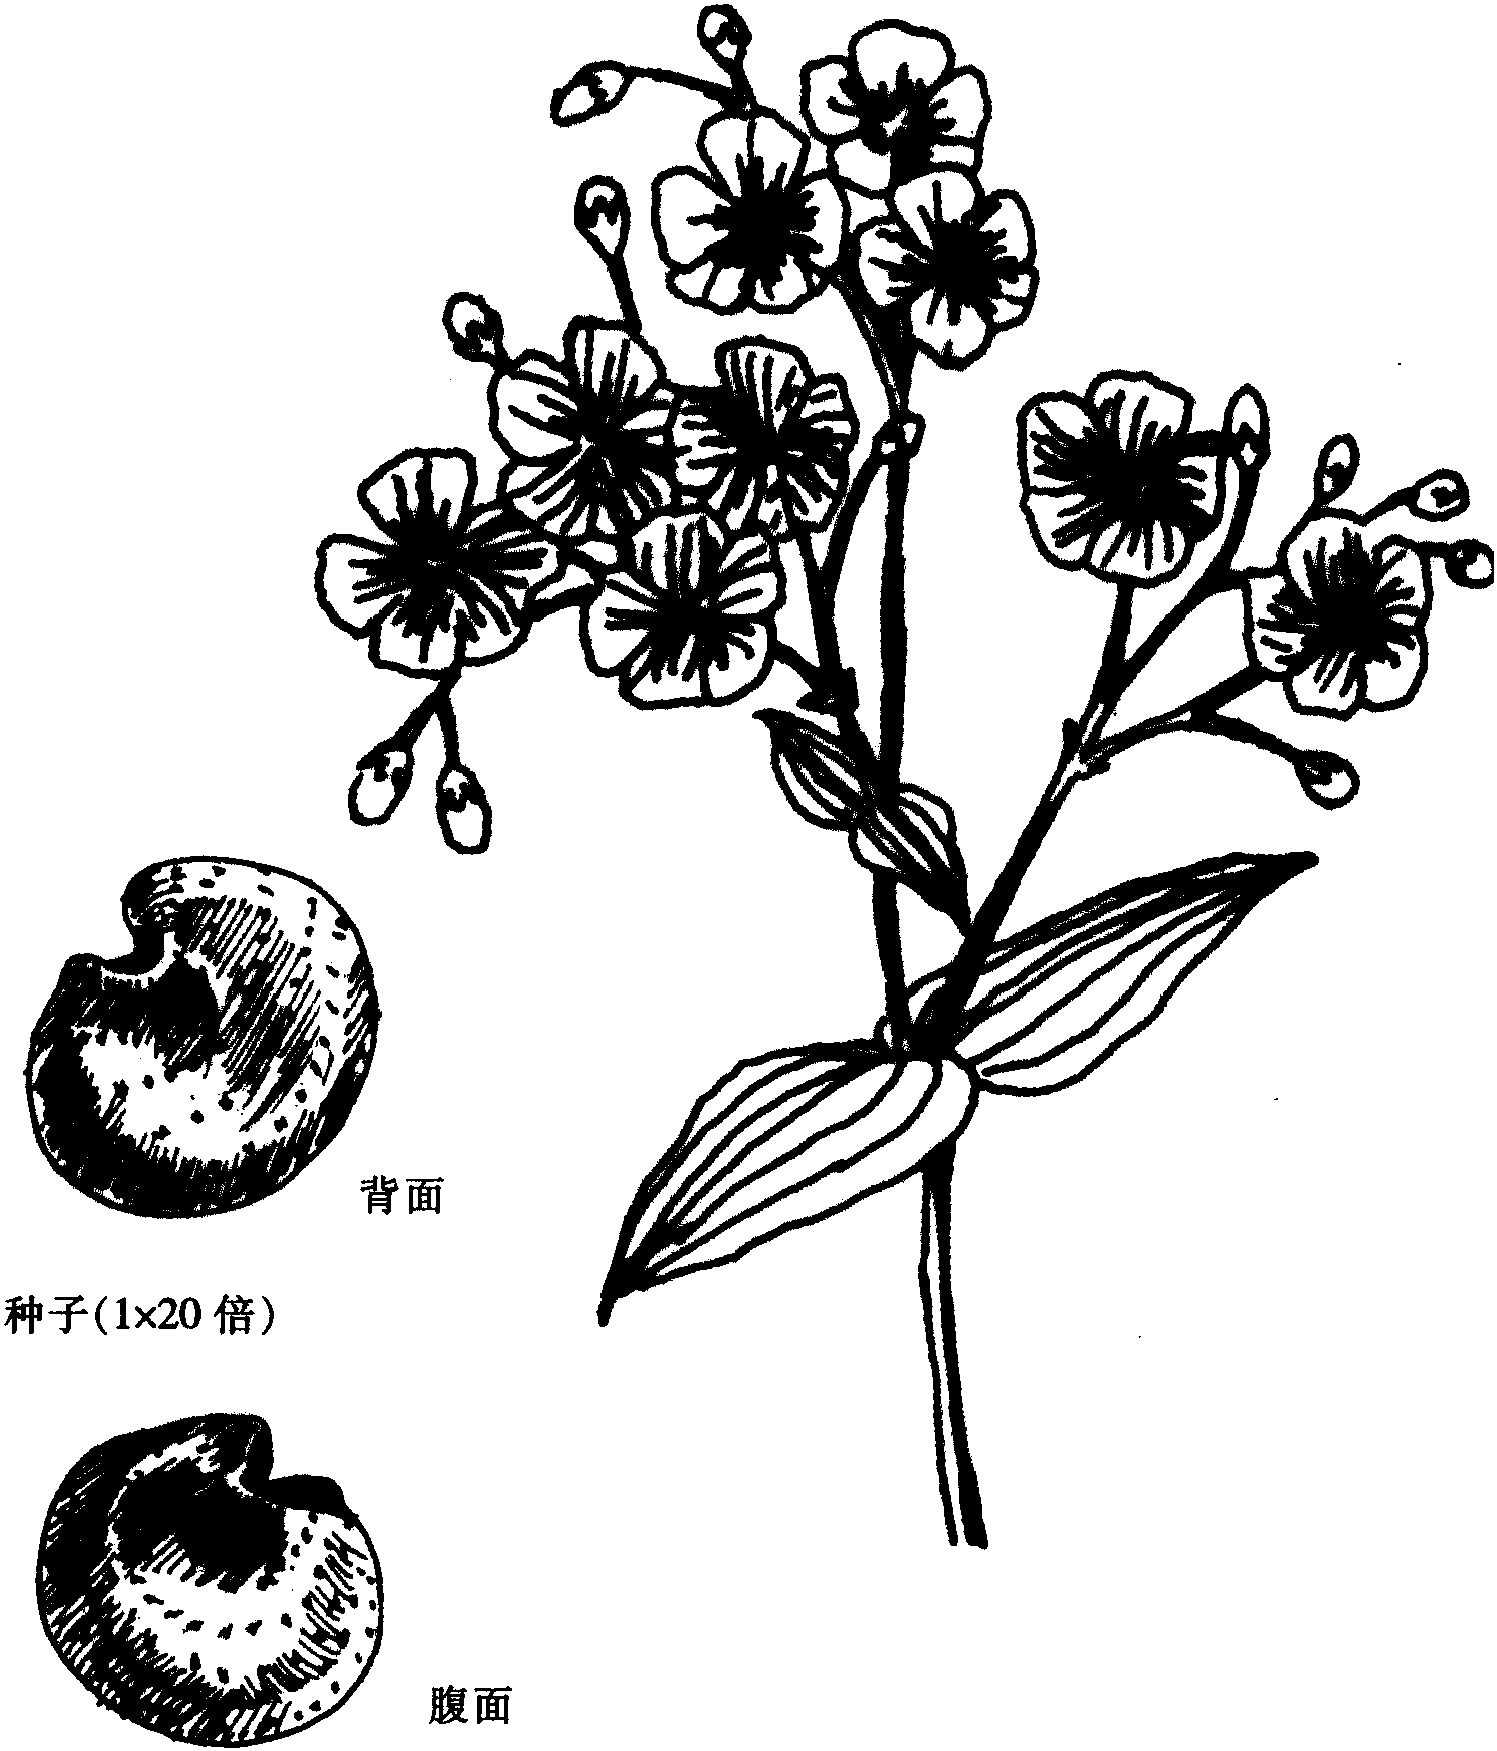 微孔草图片_大自然的微孔草图片大全 - 花卉网